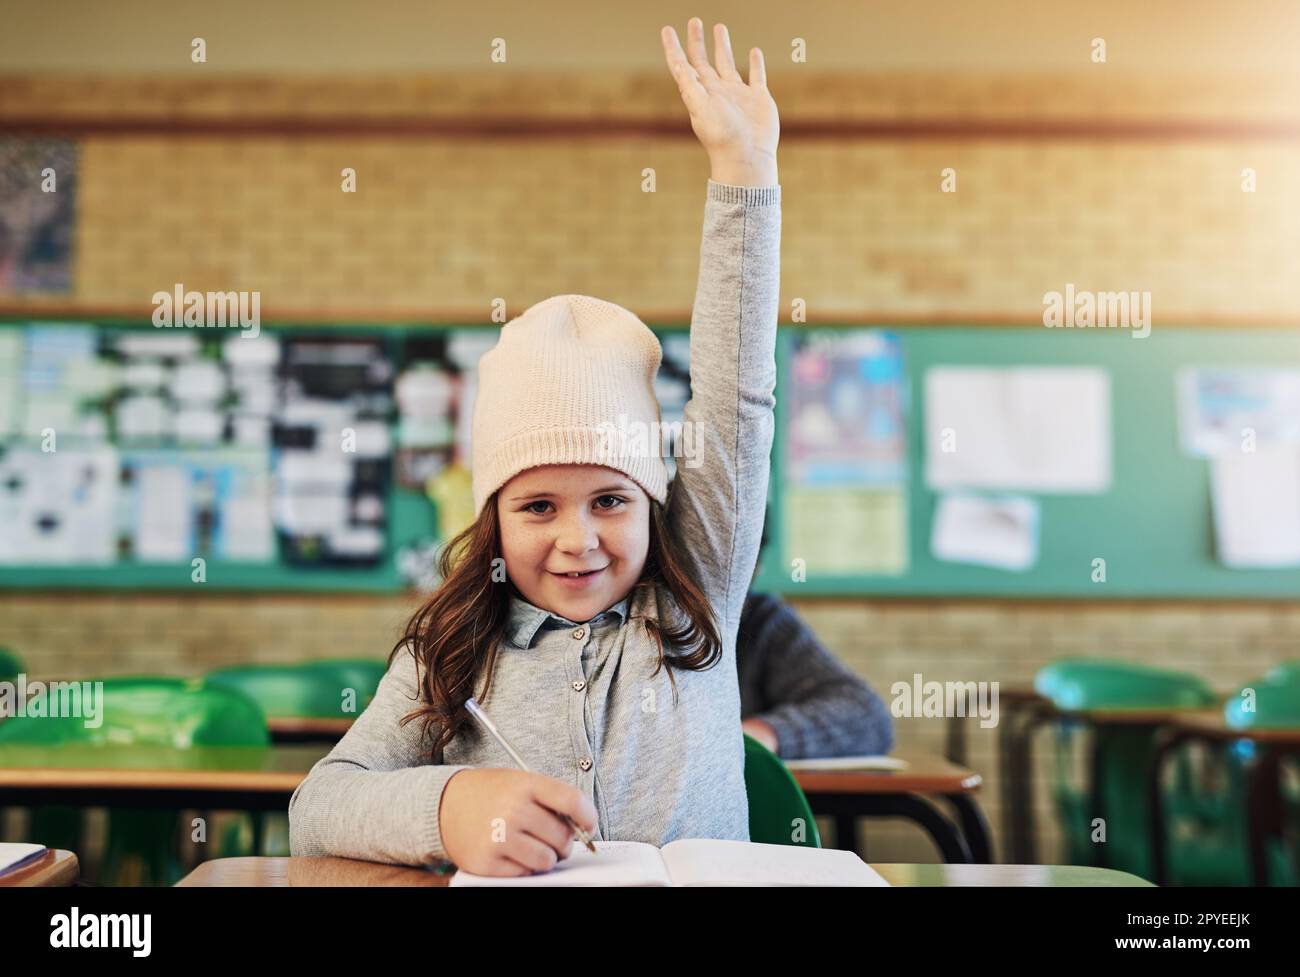 Il nostro piccolo genio della classe. Ritratto di una adorabile studentessa elementare che alza la mano in classe. Foto Stock